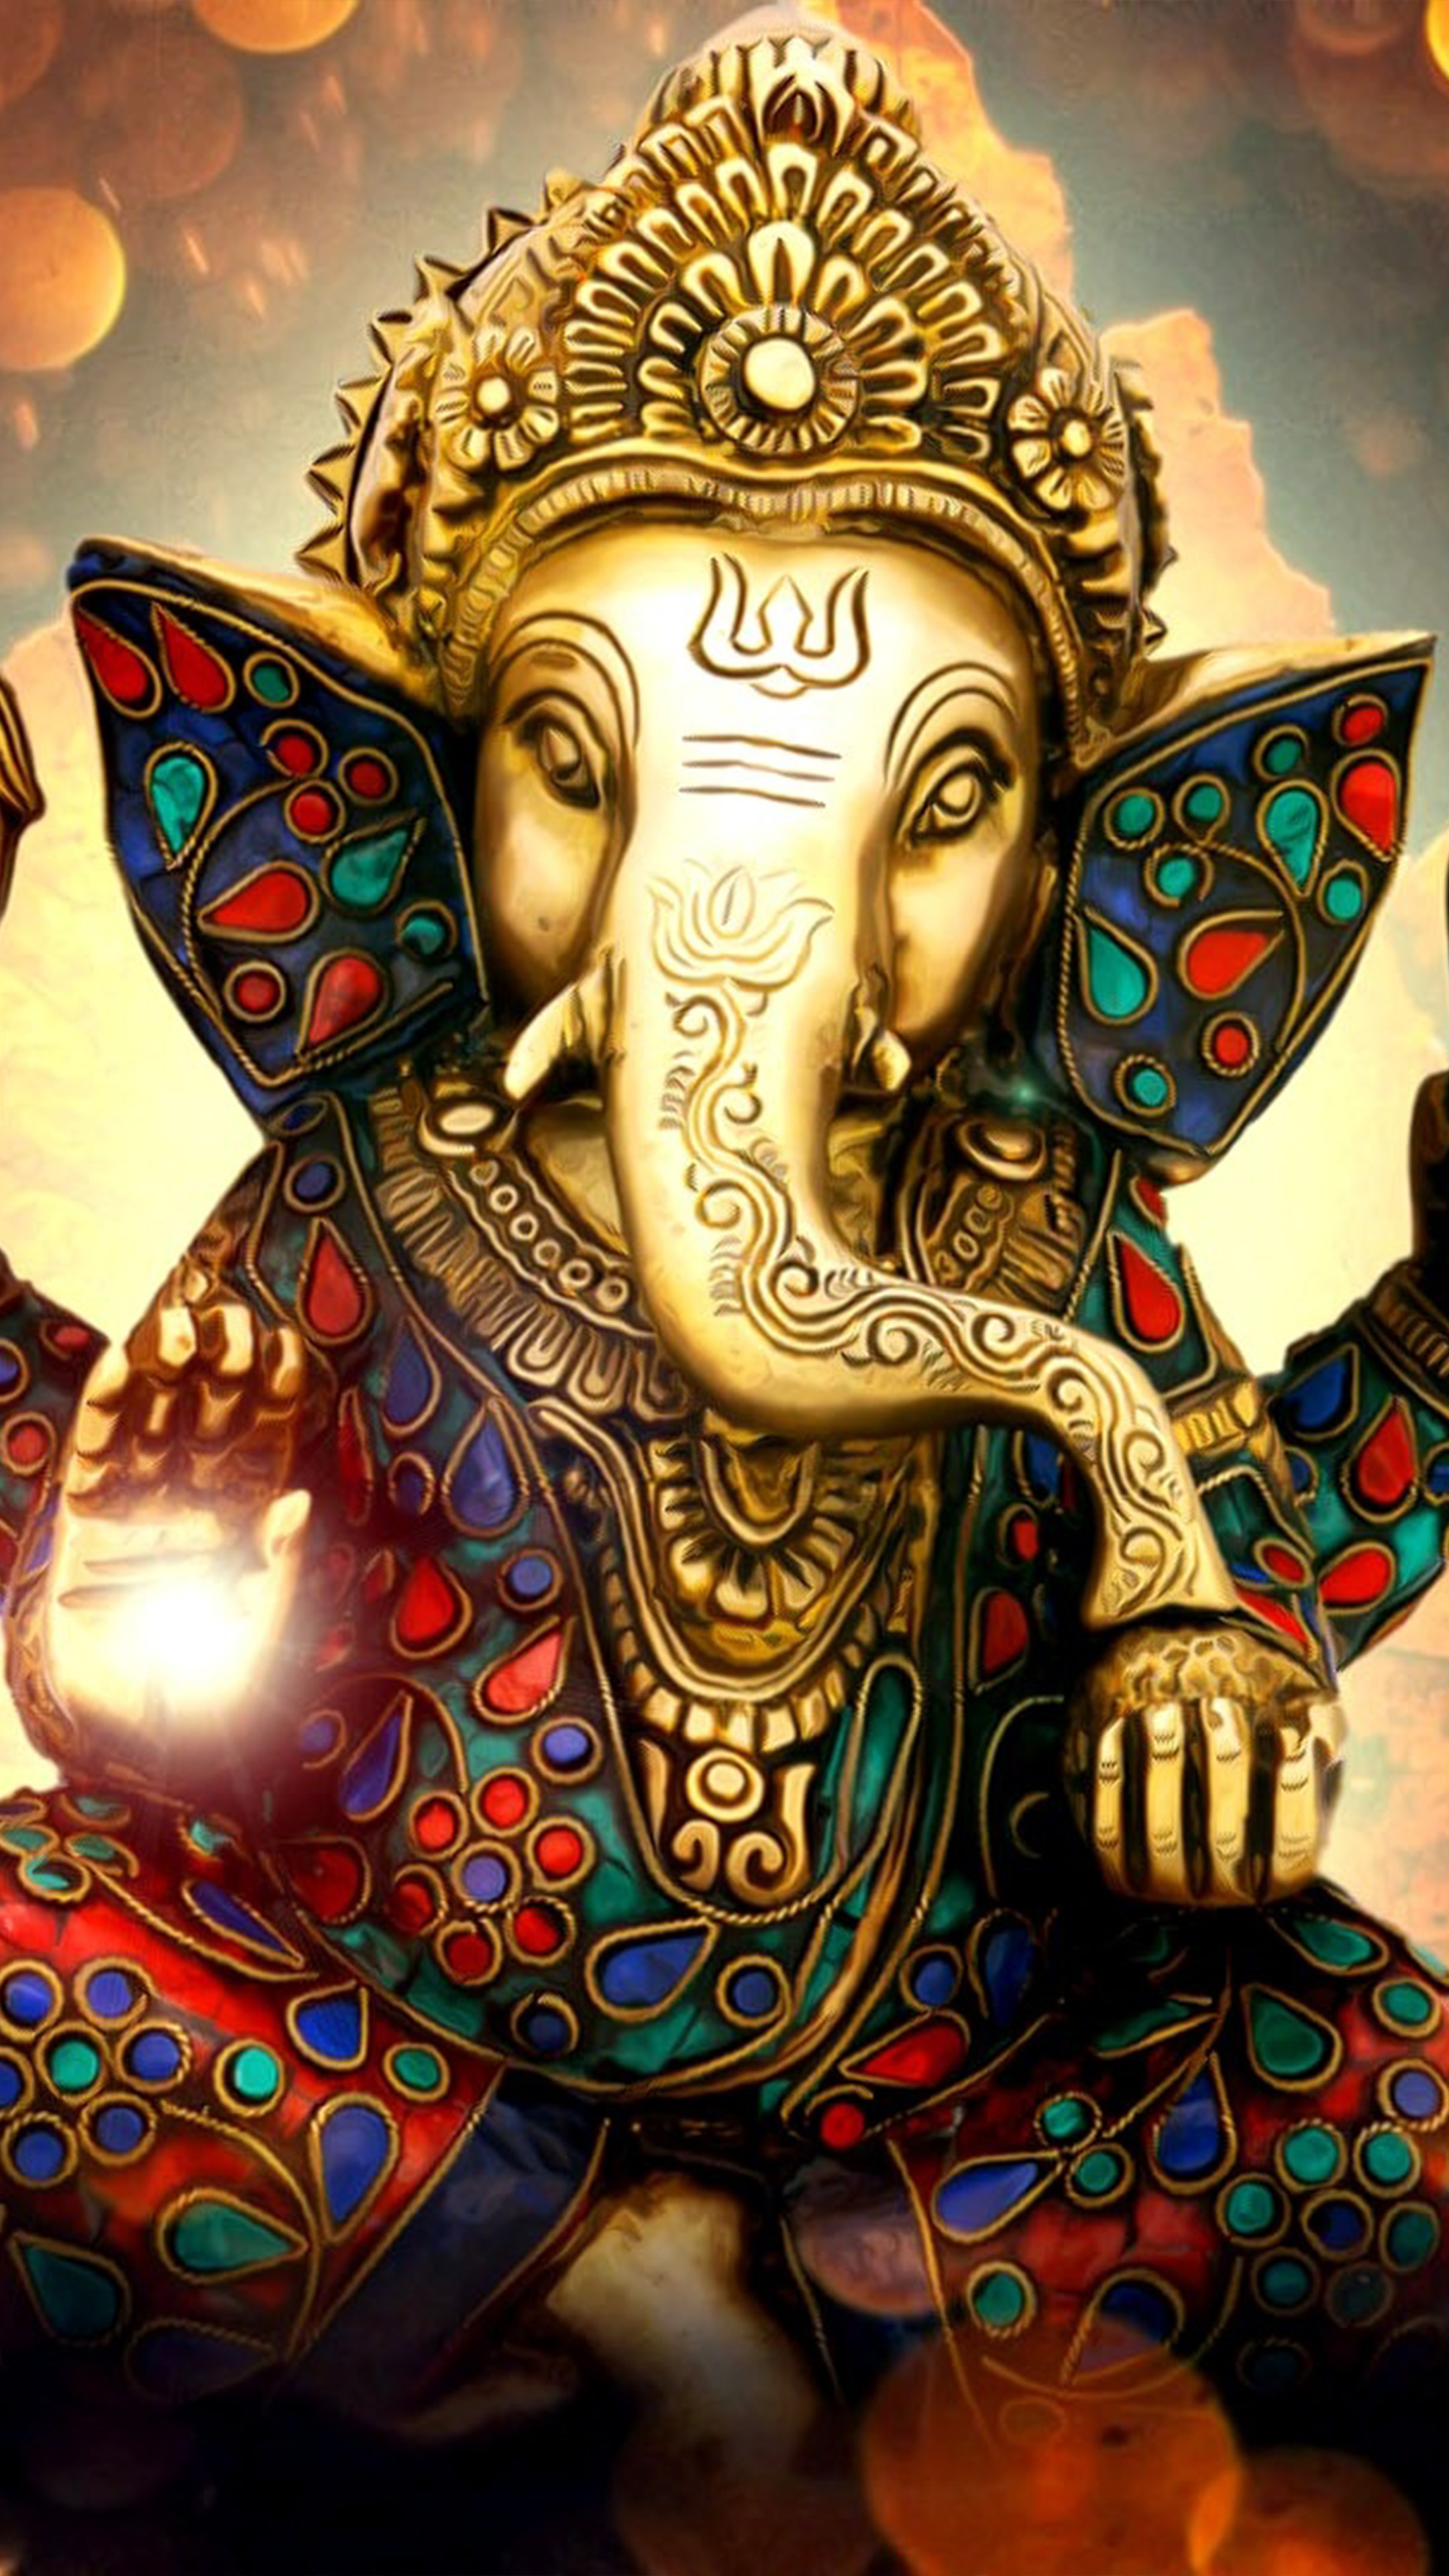 Lord Ganesha Ganapati Statue Idol: Tượng Lord Ganesha Ganapati được chế tác với sự kỹ lưỡng và tỉ mỉ, là một biểu tượng văn hóa và tôn giáo quan trọng. Hãy chiêm ngưỡng những bức ảnh đẹp nhất của tượng thần Ganesha để cảm nhận vẻ đẹp tuyệt vời của nghệ thuật và sự thành kính đối với tôn giáo.